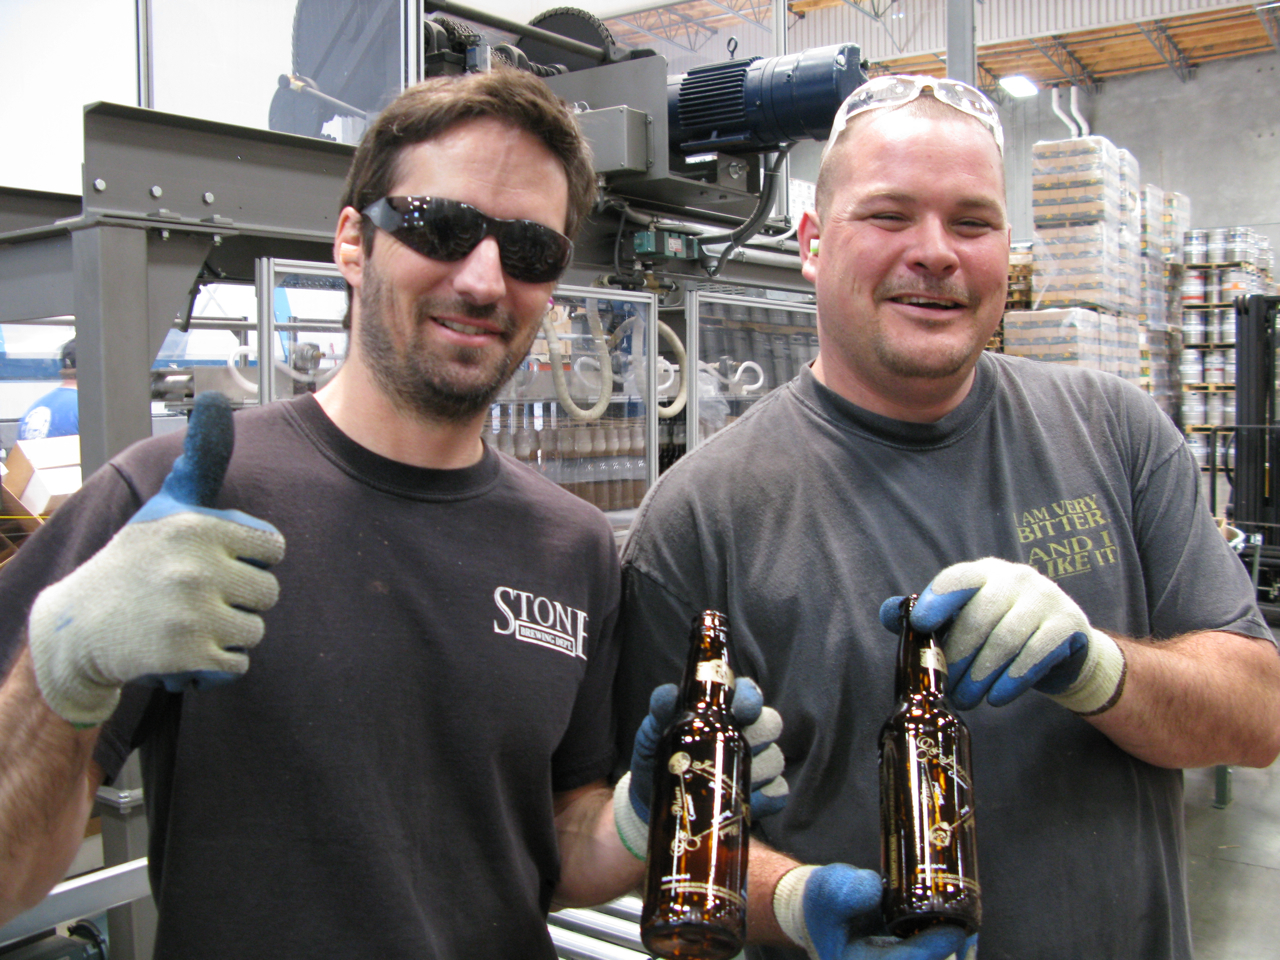 Bottling Line Operators Steve Parks and Ryan Roersma modeling the shiny new bottle